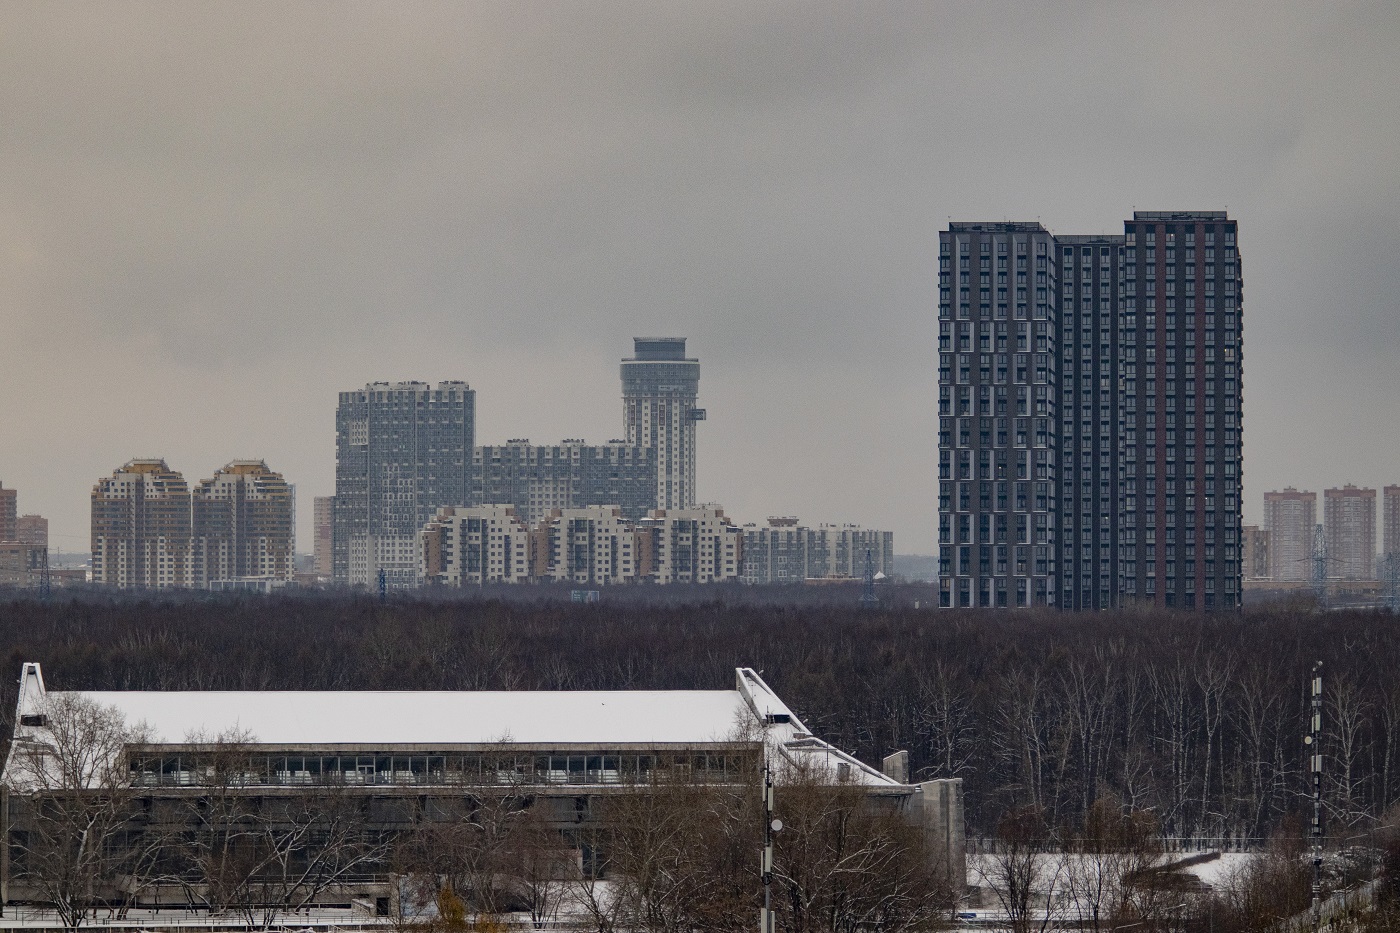 Khimki, . Moscow — Panoramas